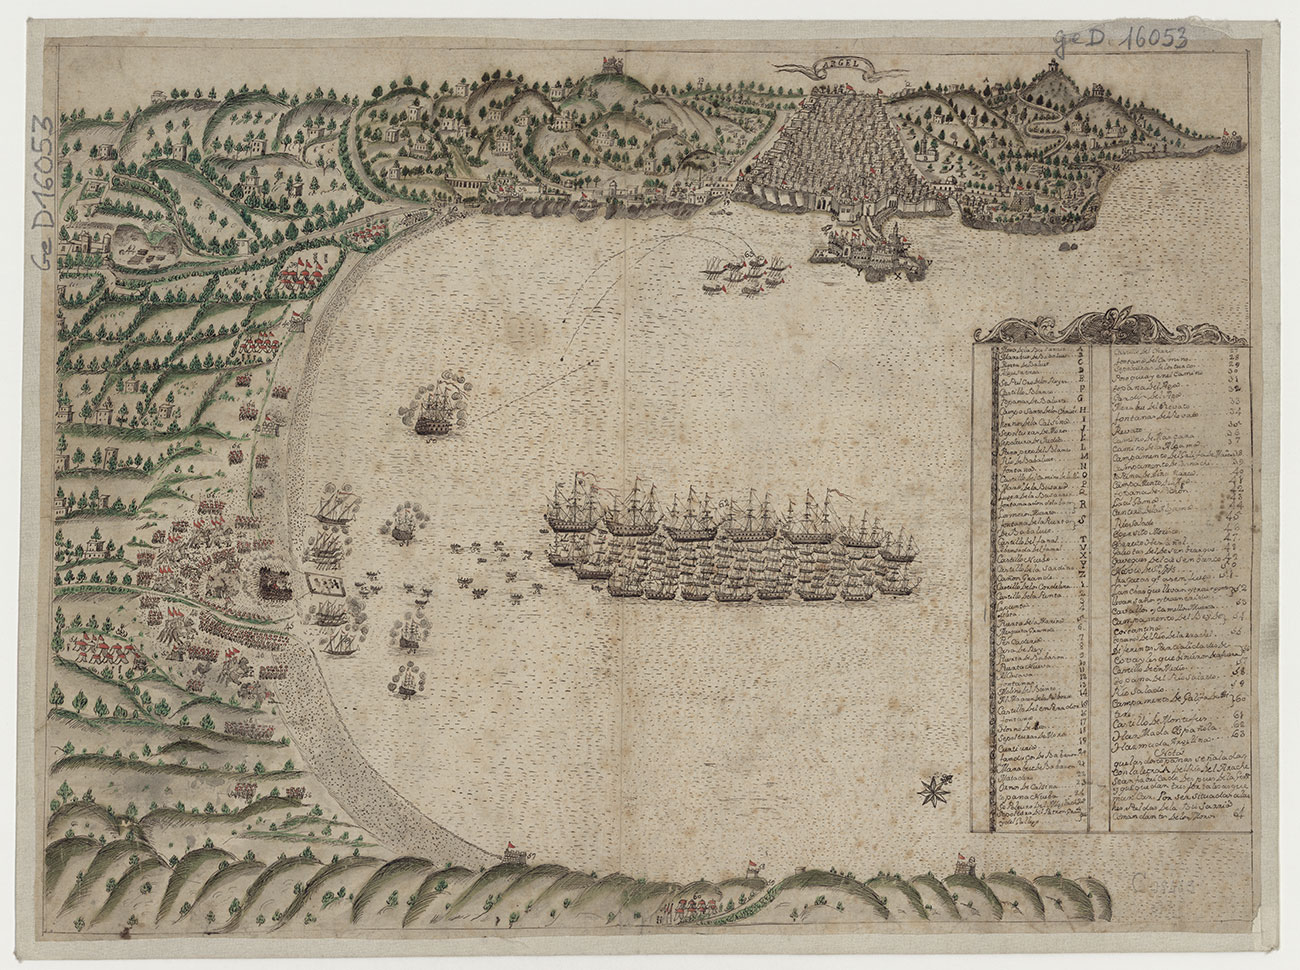 Argel, xviie siecle, Carte manuscrite © bnf